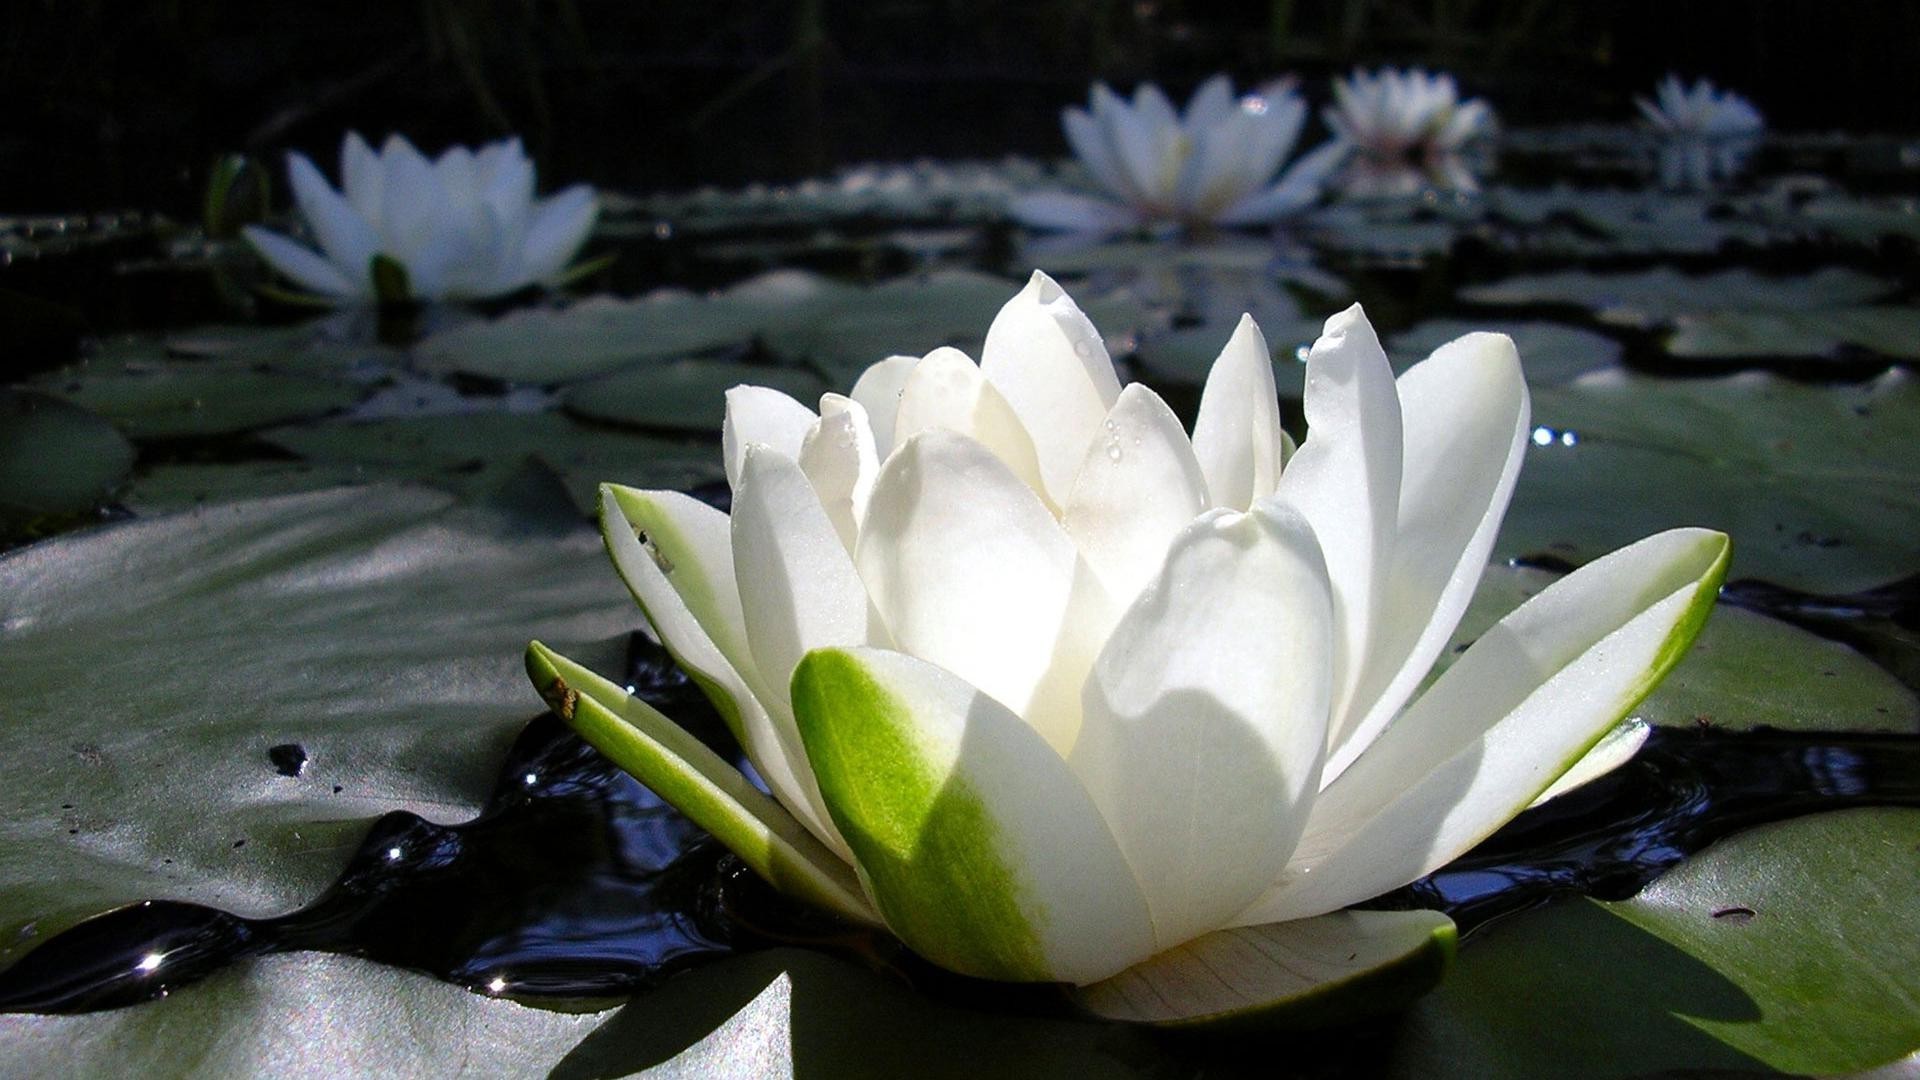 цветы в воде лотос бассейн цветок лили лист природа блюминг сад лепесток флора дзен кувшинка плавание водный медитация лето парк